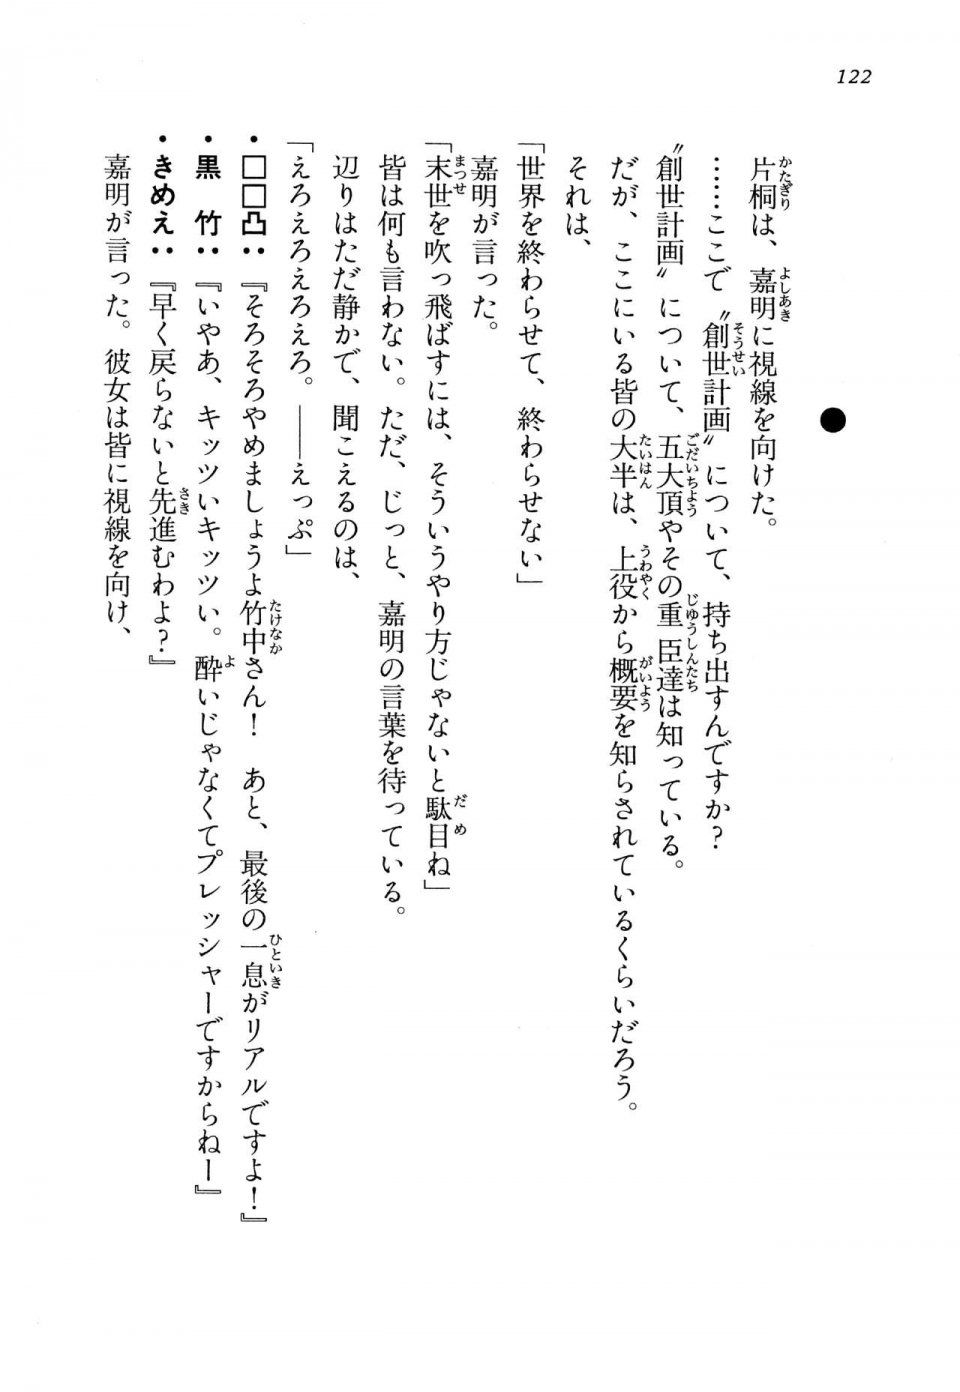 Kyoukai Senjou no Horizon LN Vol 13(6A) - Photo #122